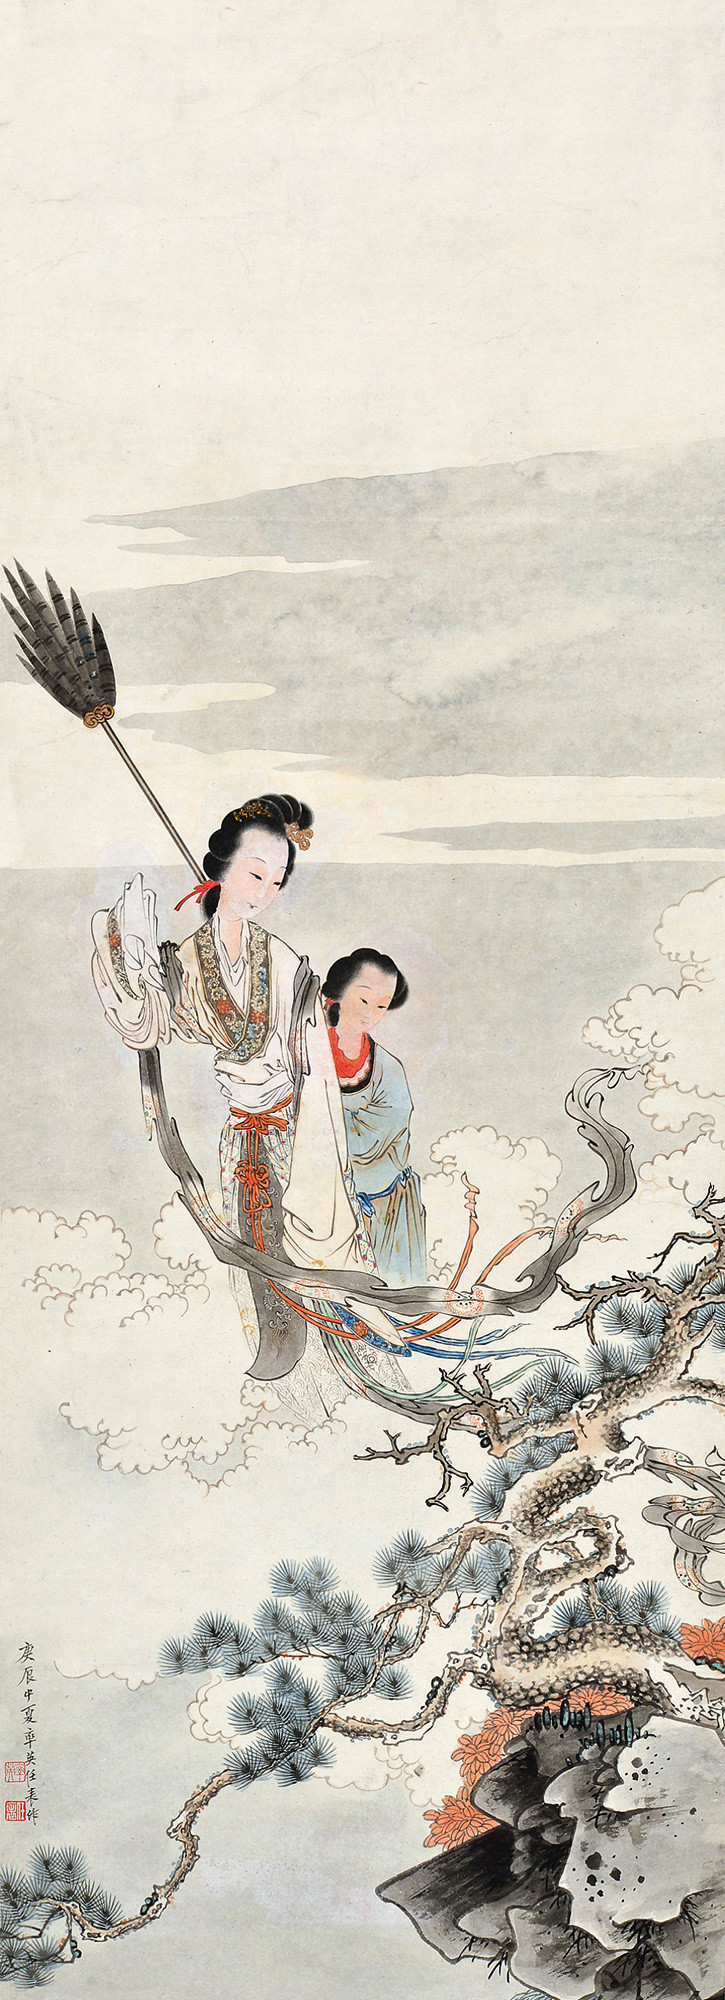 任率英(1911-1989,中国现代连环画家,年画家,中国画家,擅工笔重彩